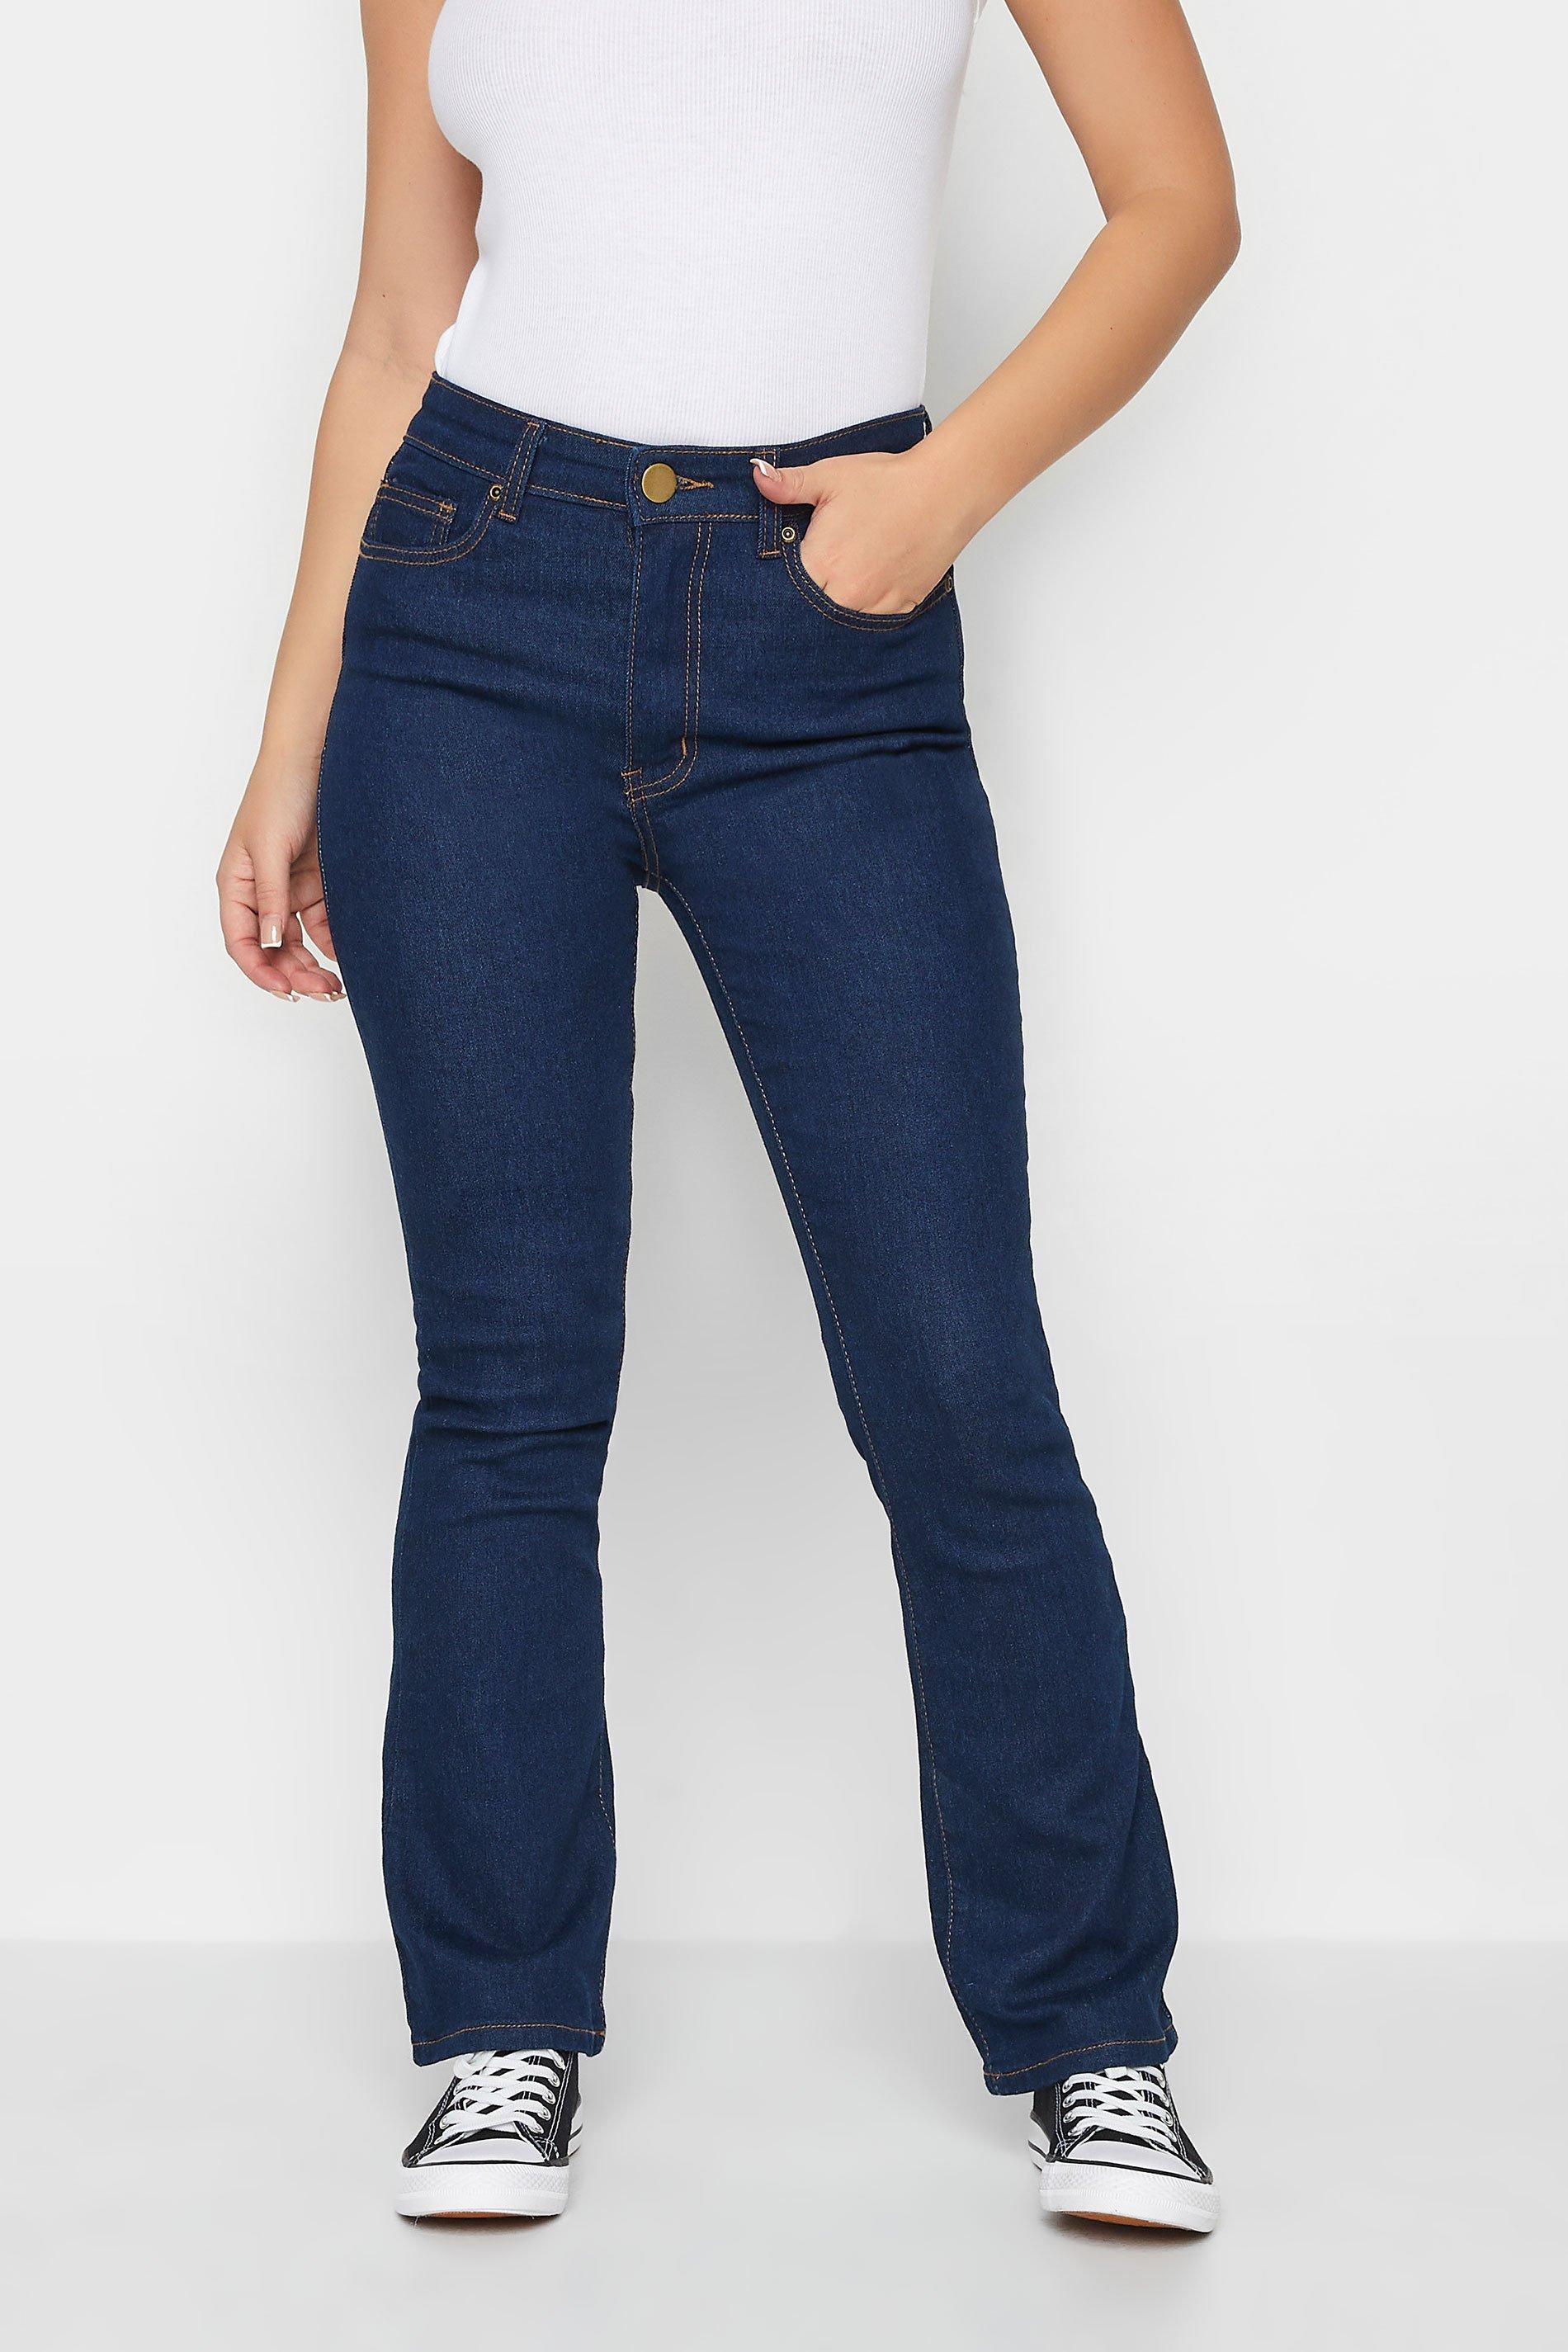 Миниатюрные джинсы Bootcut PixieGirl, синий миниатюрные широкие брюки pixiegirl синий